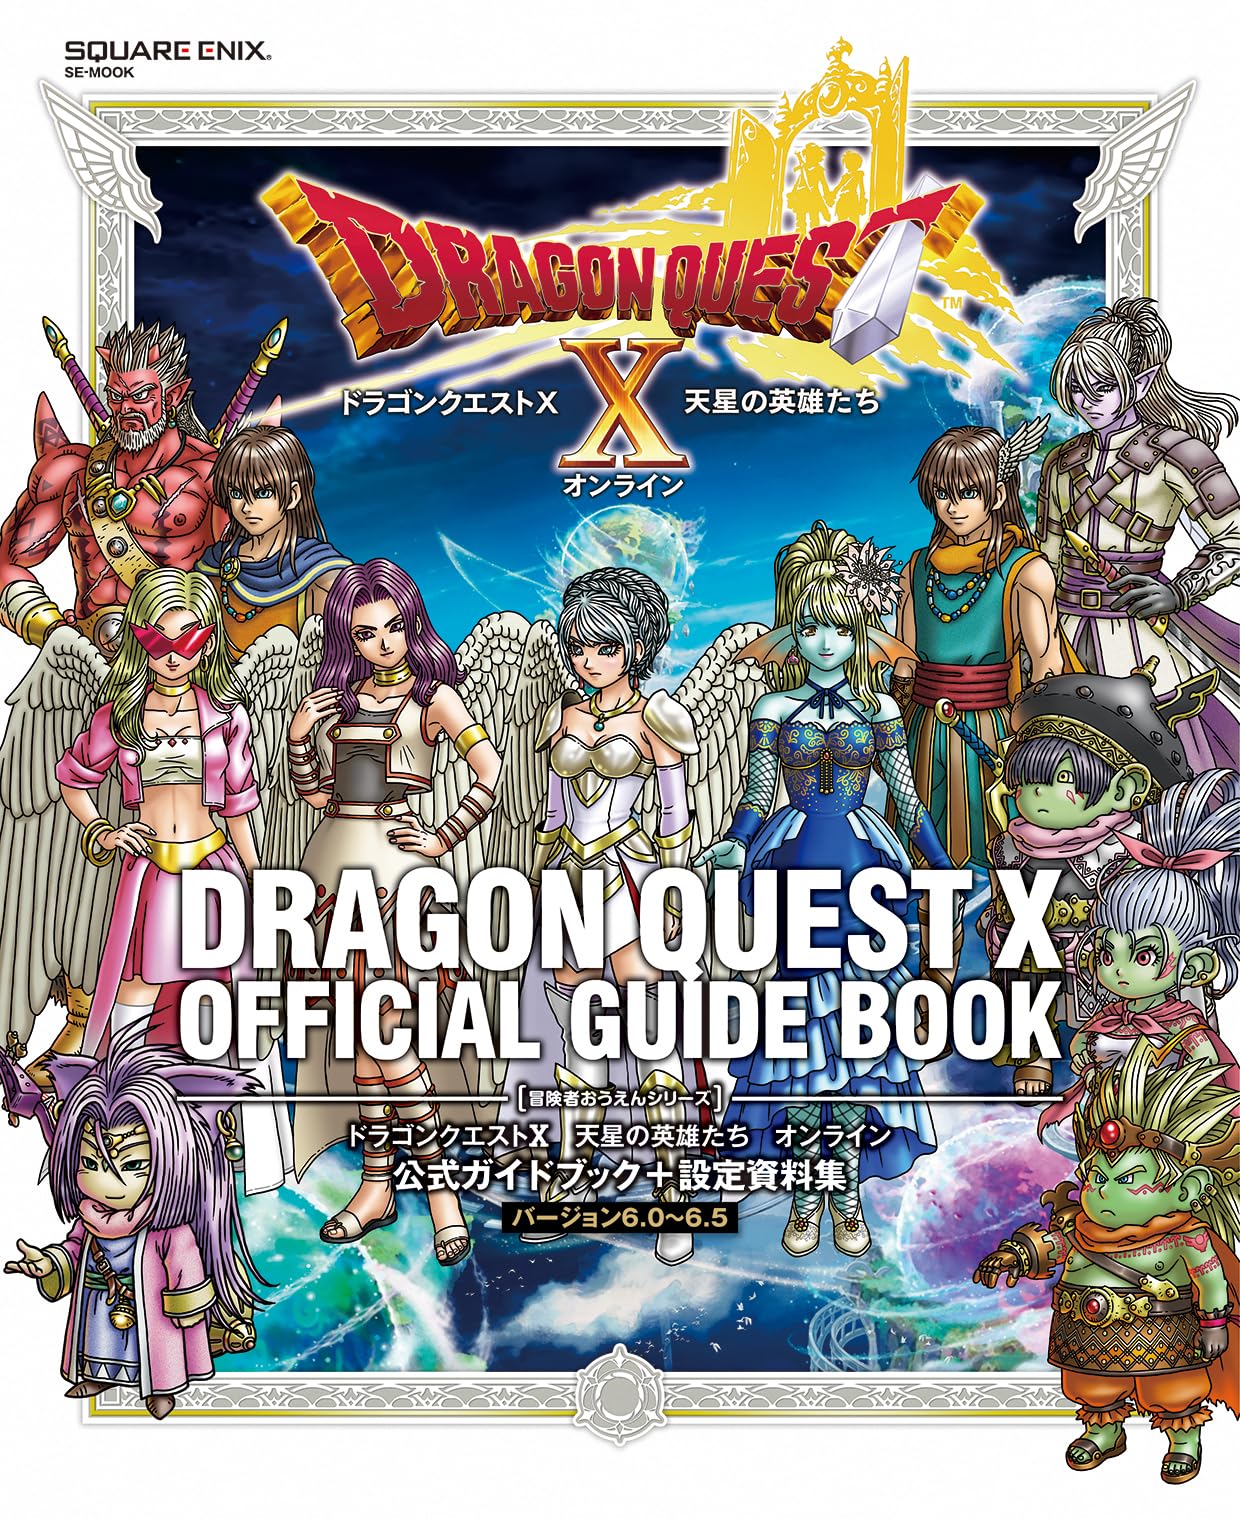 ドラゴンクエストX 天星の英雄たち オンライン 公式ガイドブック+設定資料集 【バ-ジョン6.0~6.5】 (SE-MOOK)